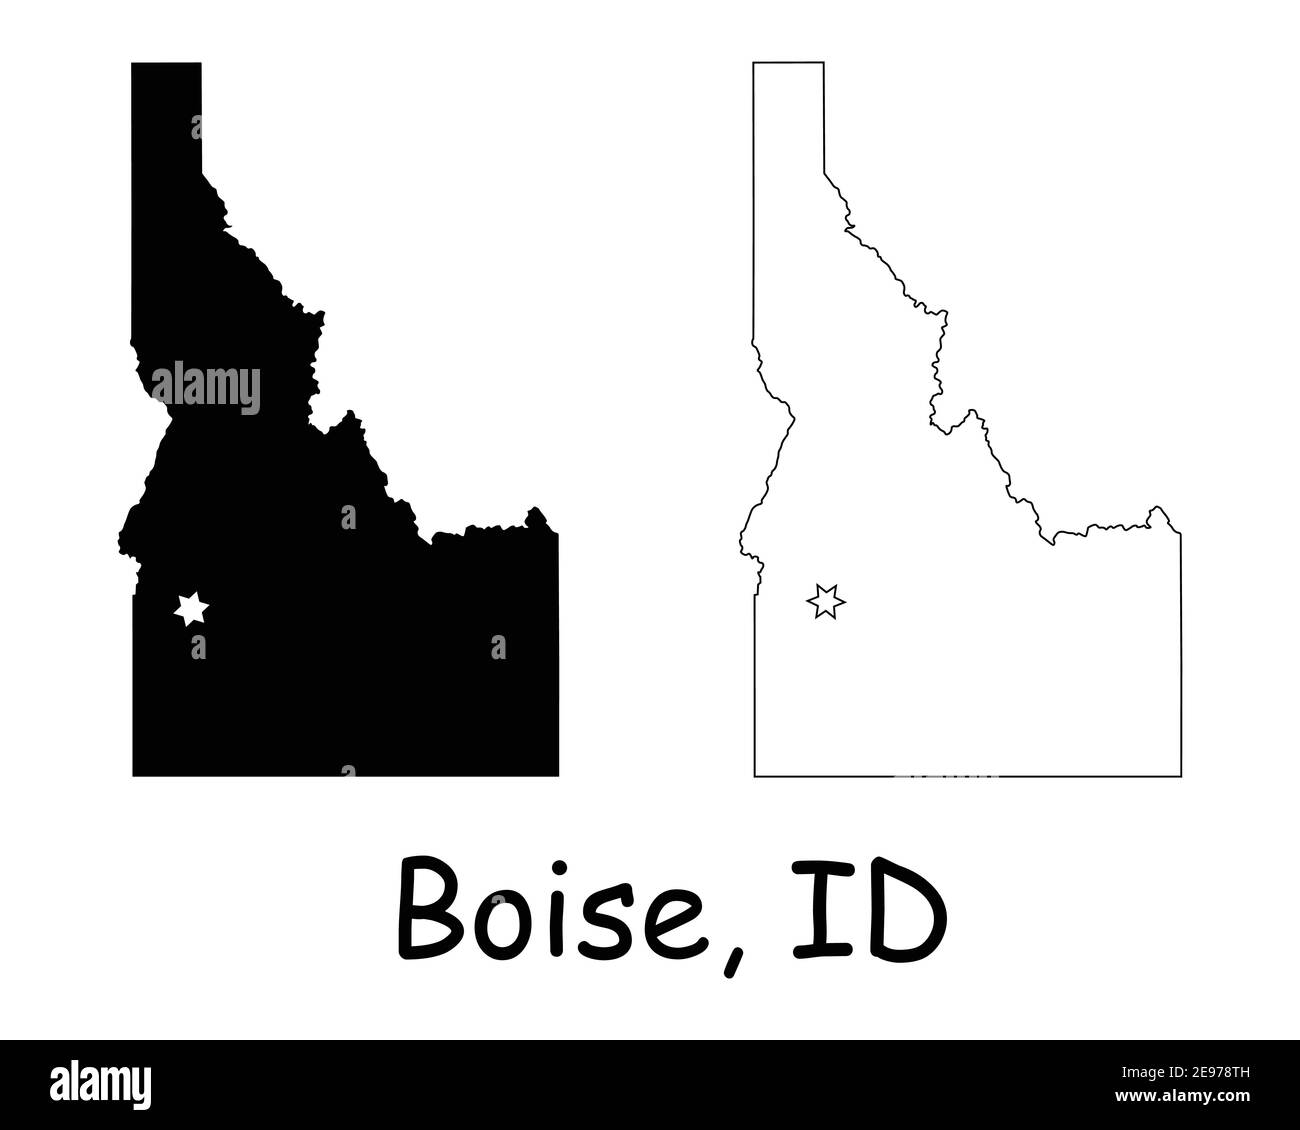 Idaho ID State Map USA mit Capital City Star in Boise. Schwarze Silhouette und Umriss isoliert auf weißem Hintergrund. EPS-Vektor Stock Vektor